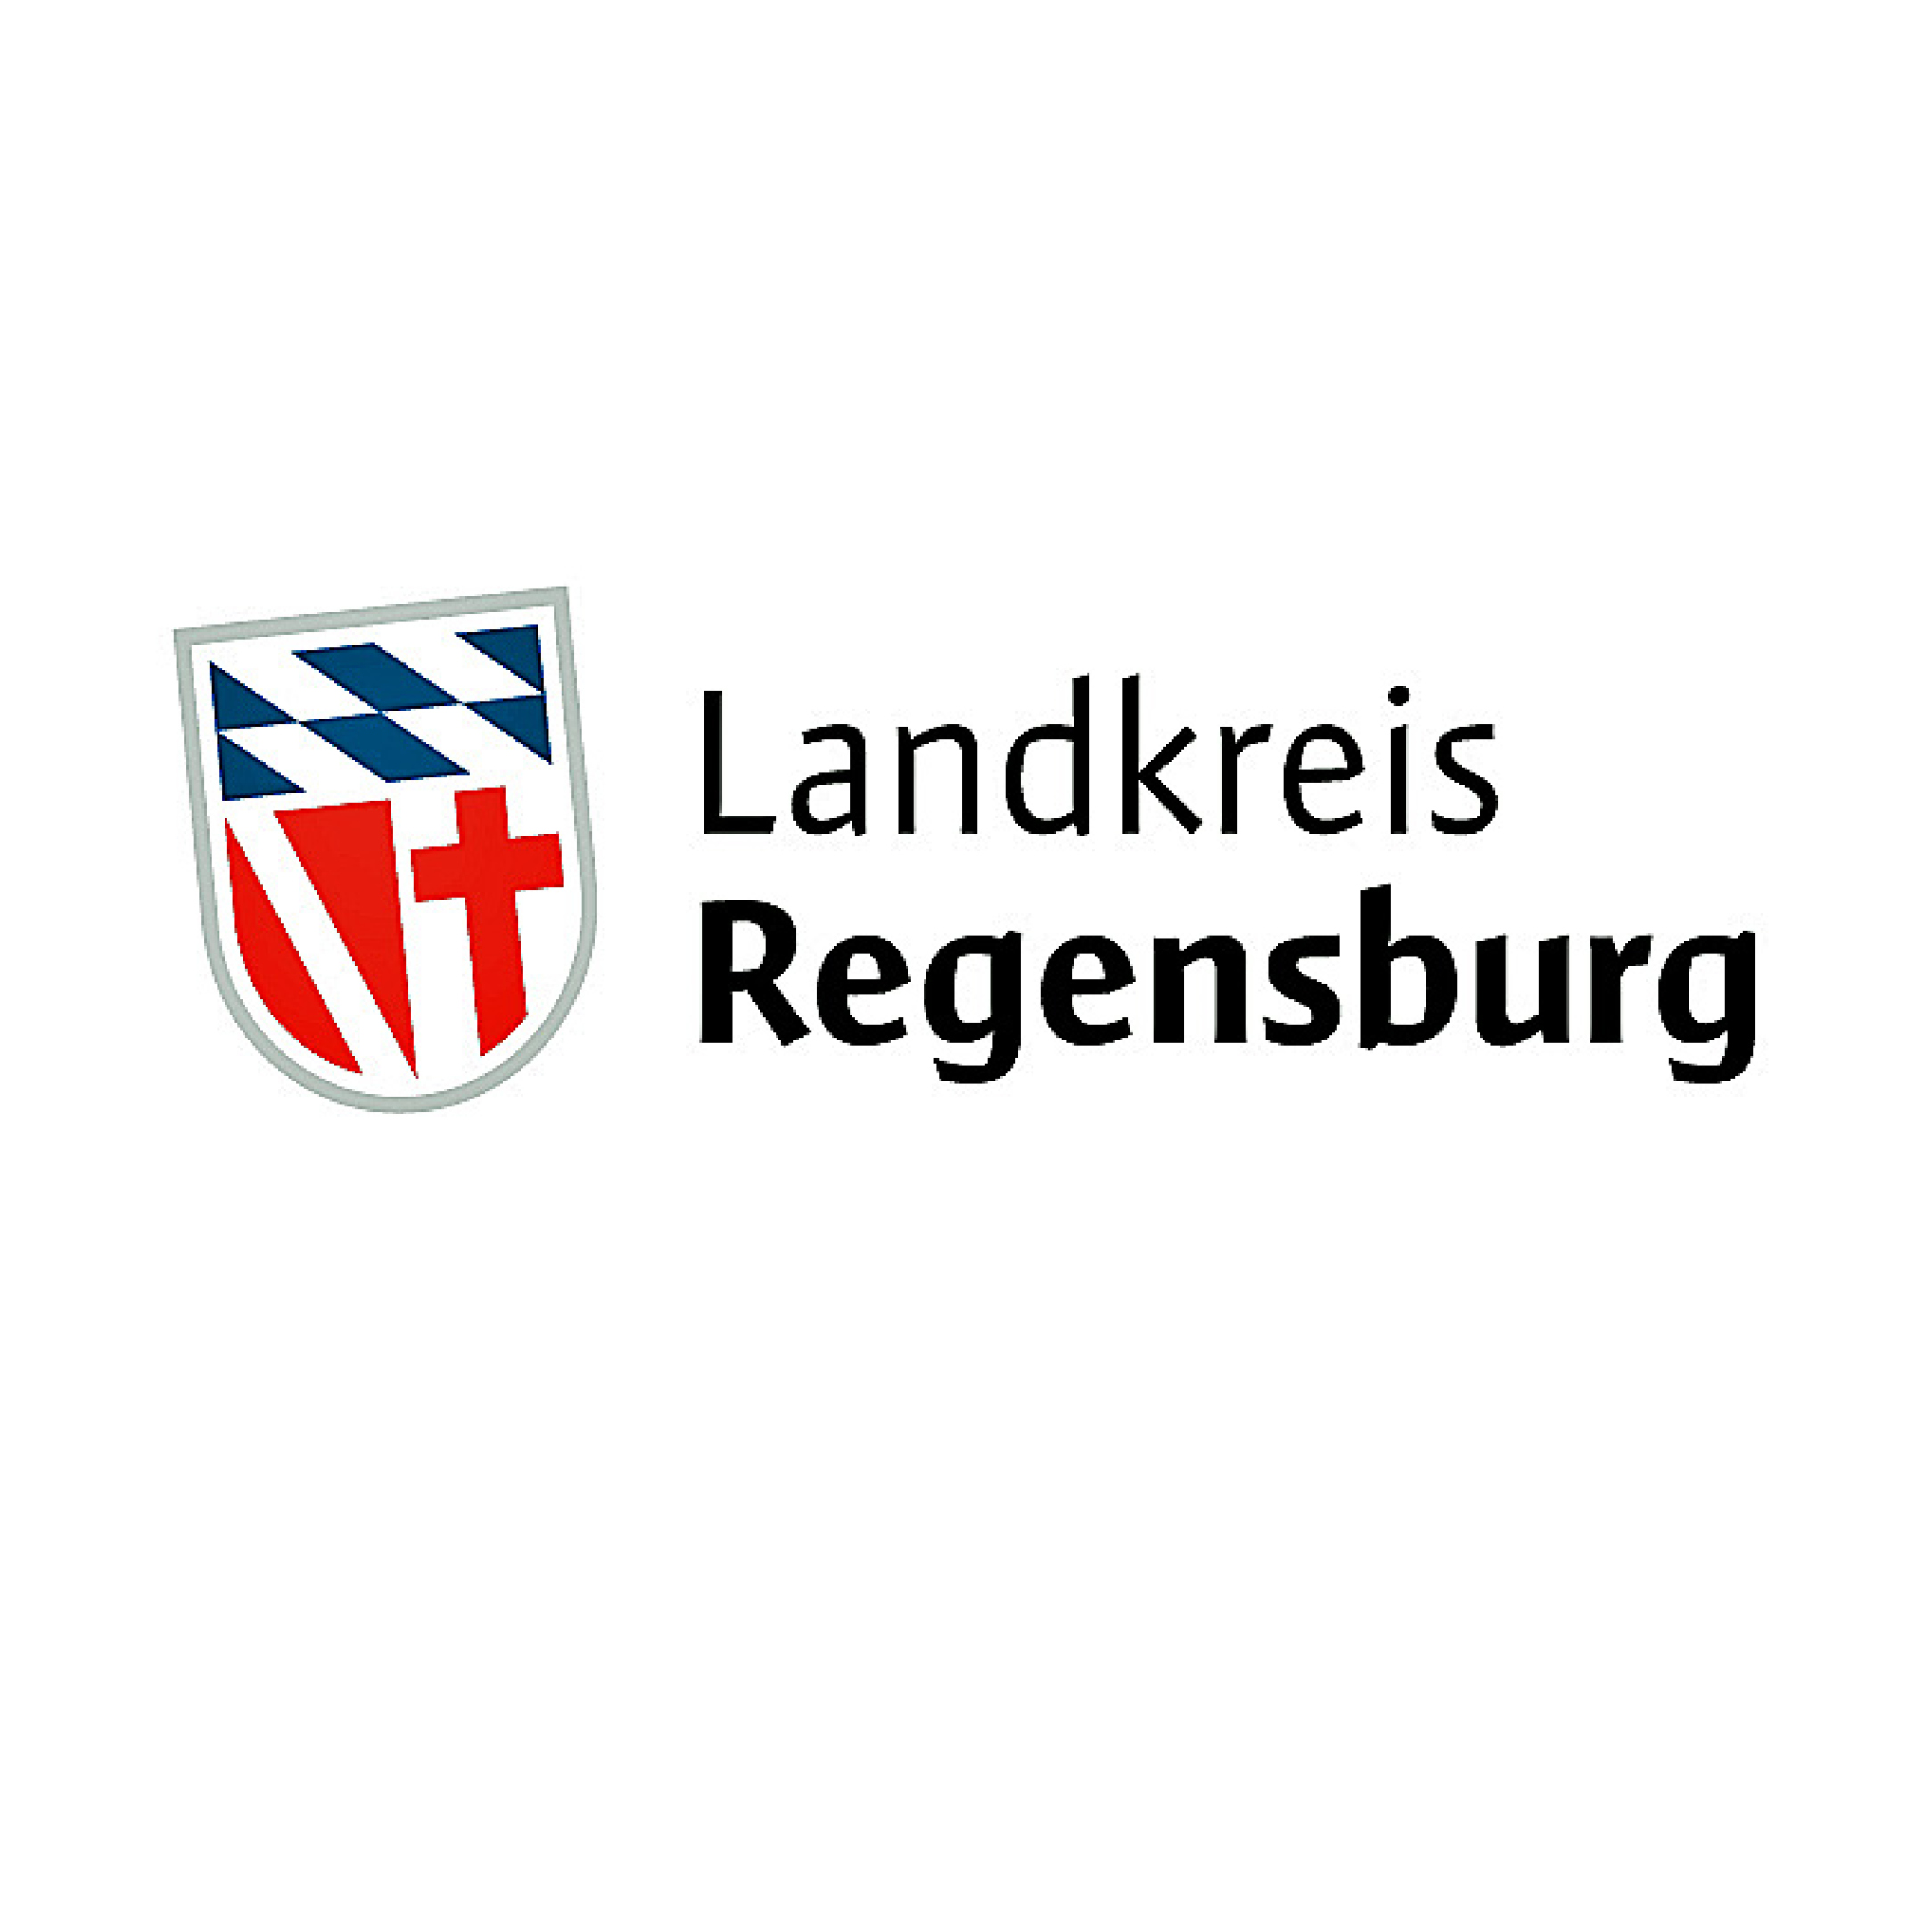 Jugendarbeit im Landkreis Regensburg e.V.